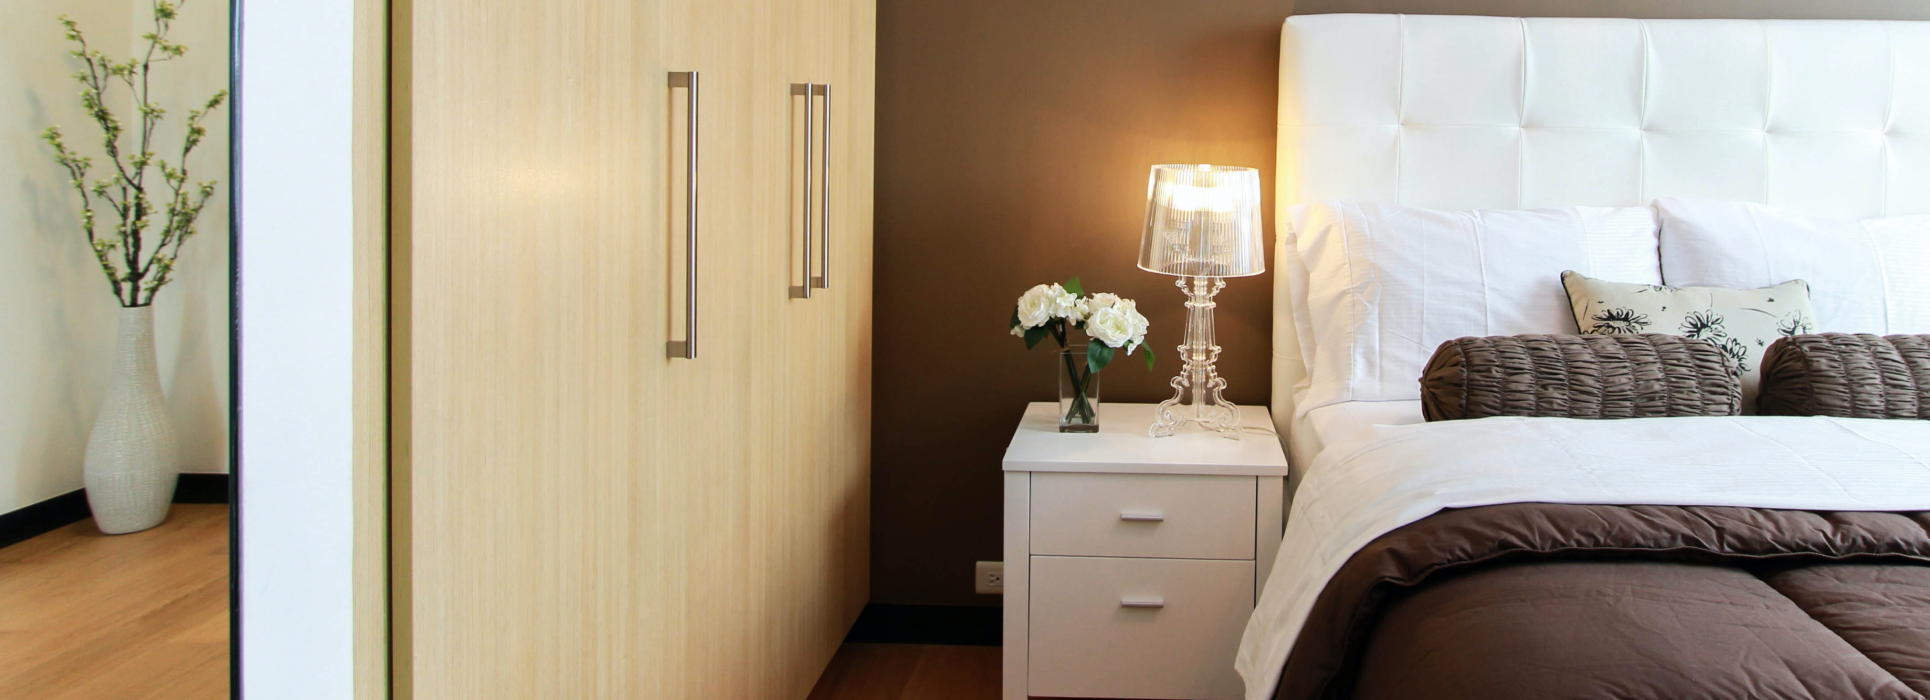 Idee per l'illuminazione della camera da letto - Crea un'illuminazione moderna per camera da letto con dispositivi intelligenti